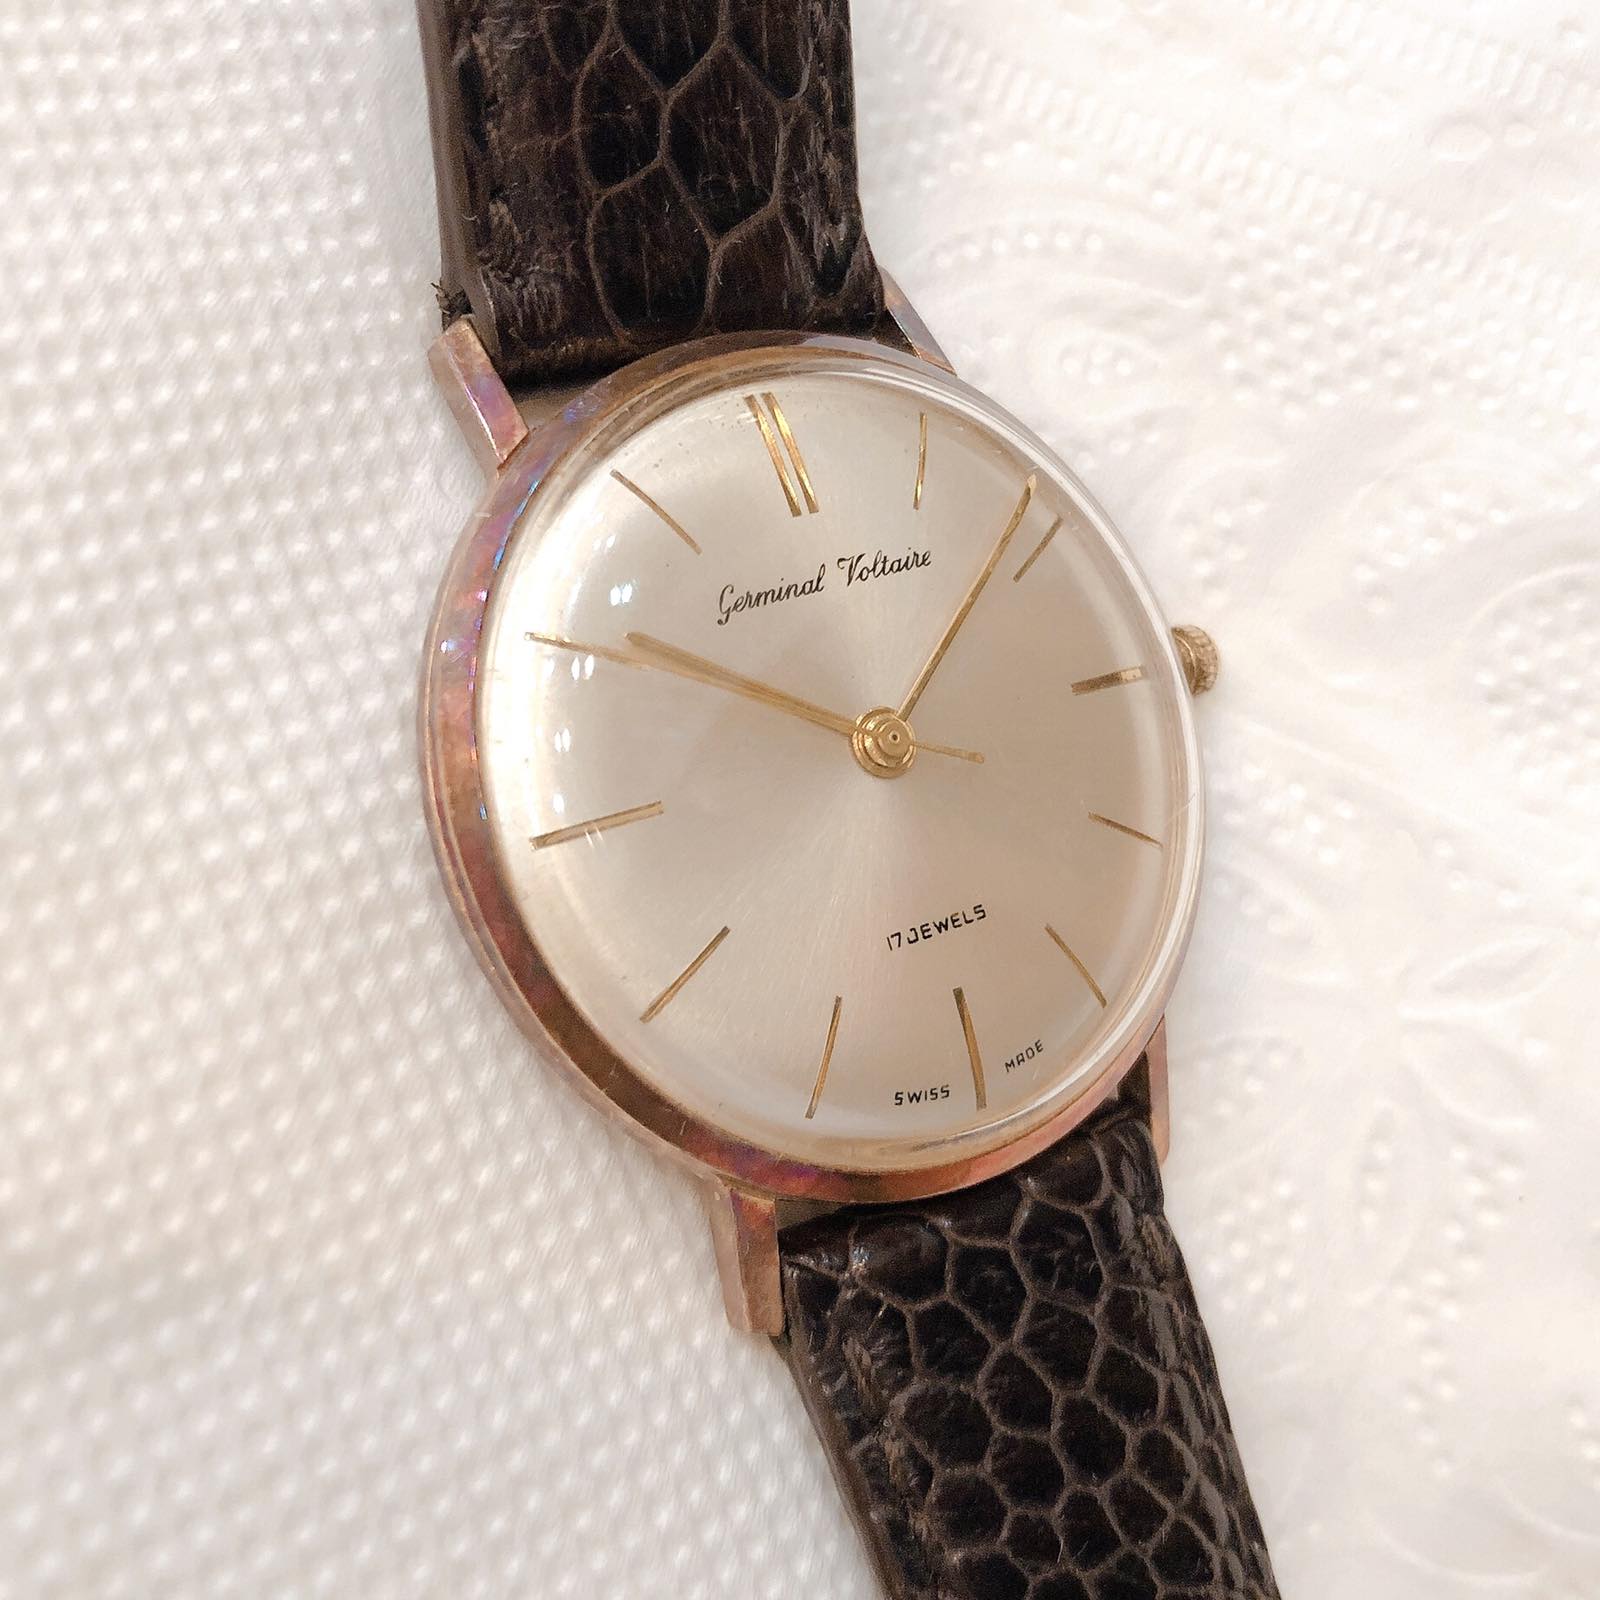 Đồng hồ cổ Germinal Voltaire lên dây vàng đúc 14k chính hãng thụy sỹ